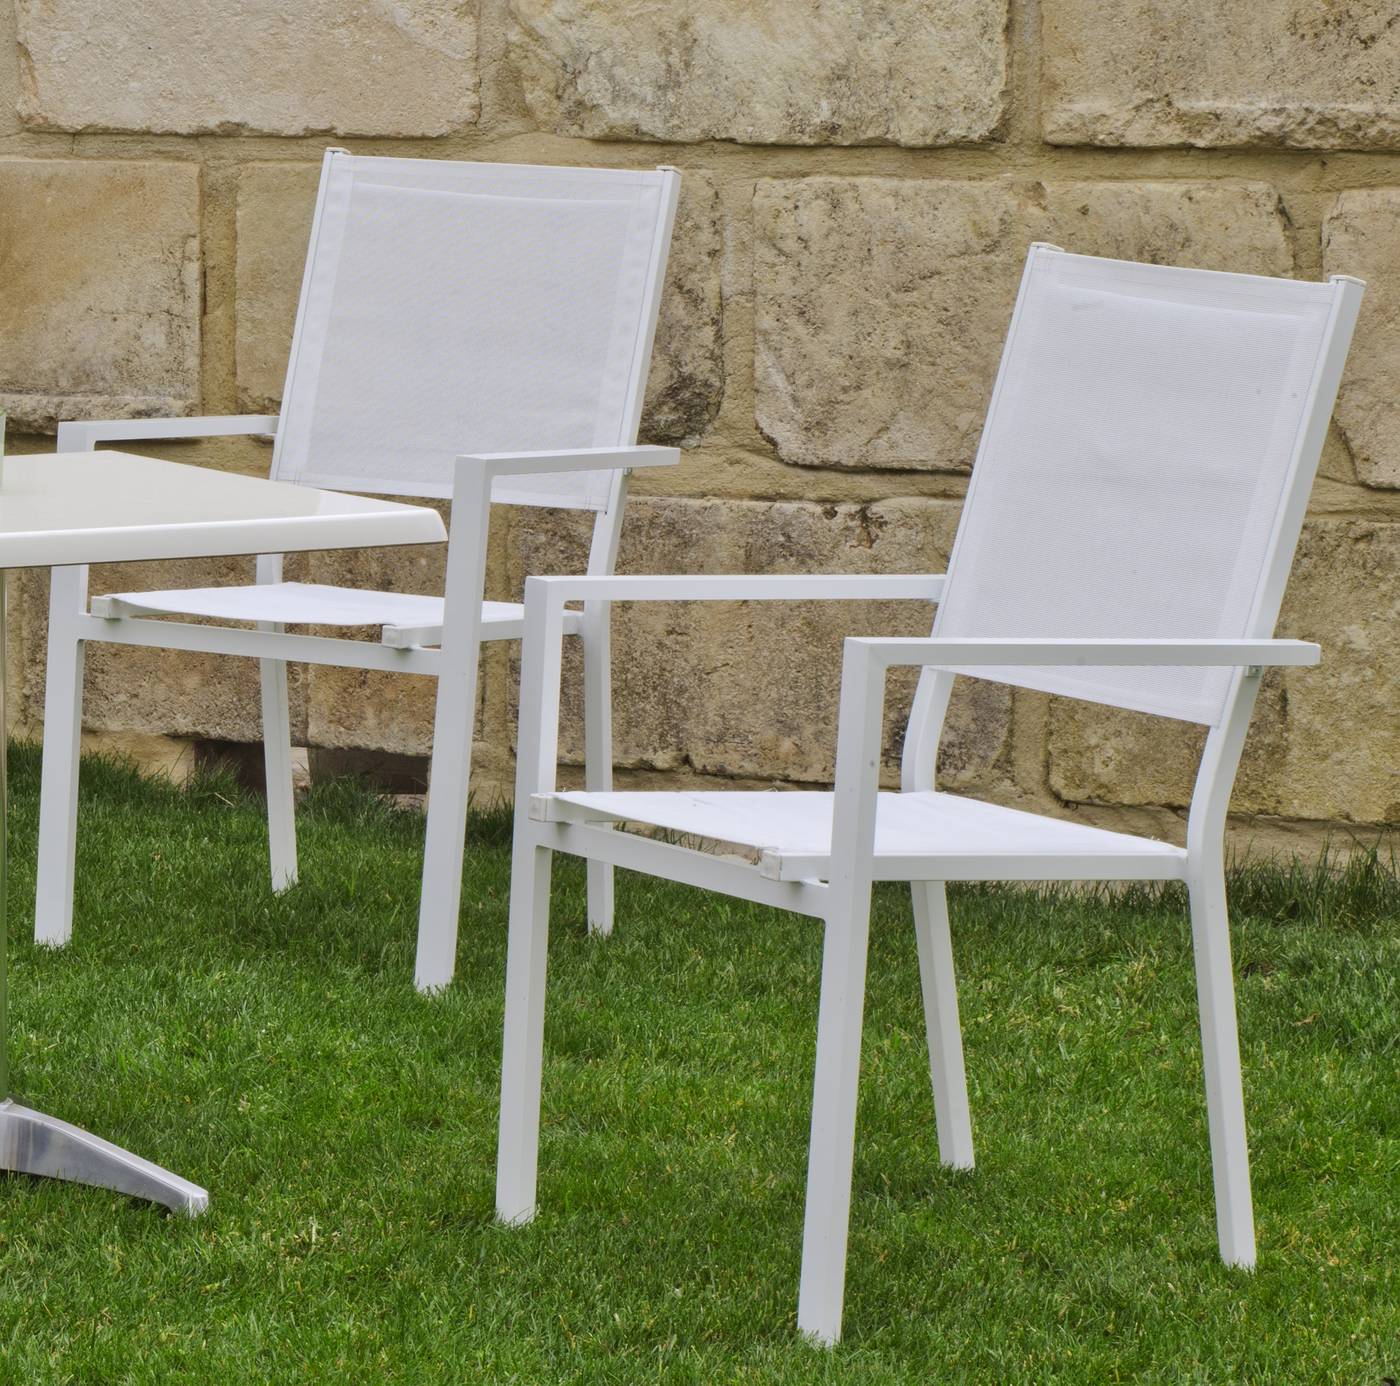 Set Aluminio Palma-Roma 200- 8 - Mesa rectangular de aluminio  con tablero lamas de aluminio + 8 sillones de textilen. Disponible en color blanco, antracita, champagne, plata o marrón.